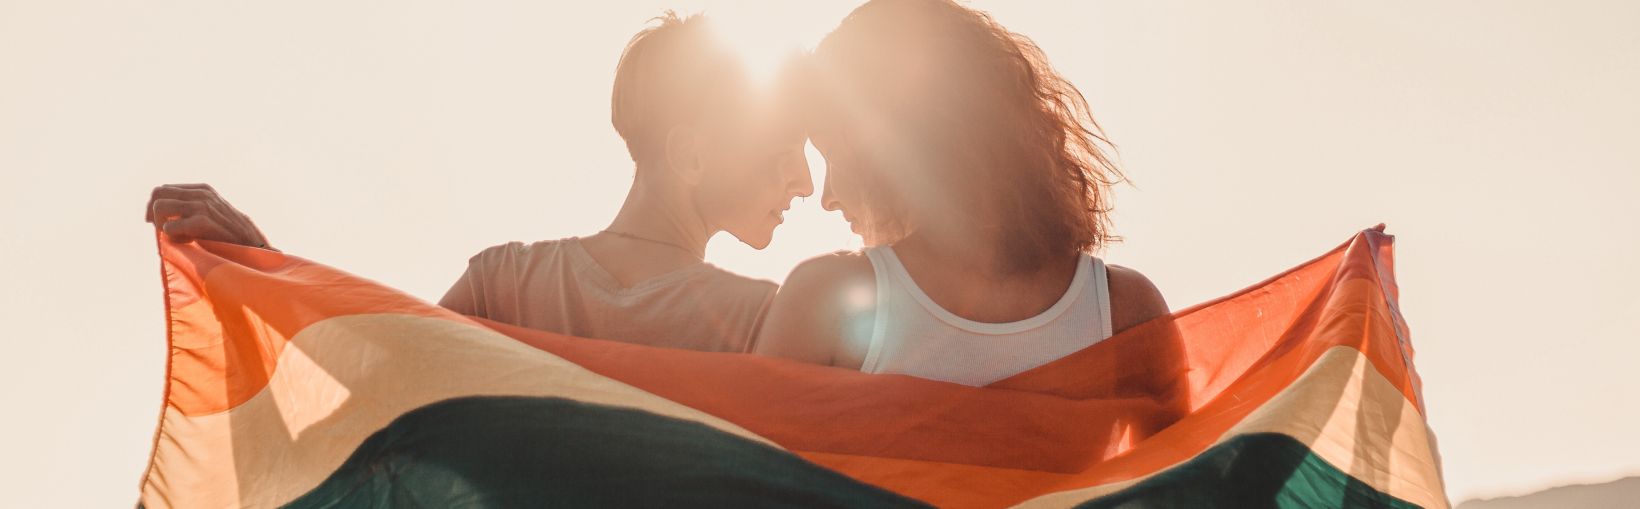 Ein schönes lesbisches junges Paar umarmt und hält sanft liebevoll eine Regenbogenflagge, gleiche Rechte für die LGBT-Gemeinschaft,